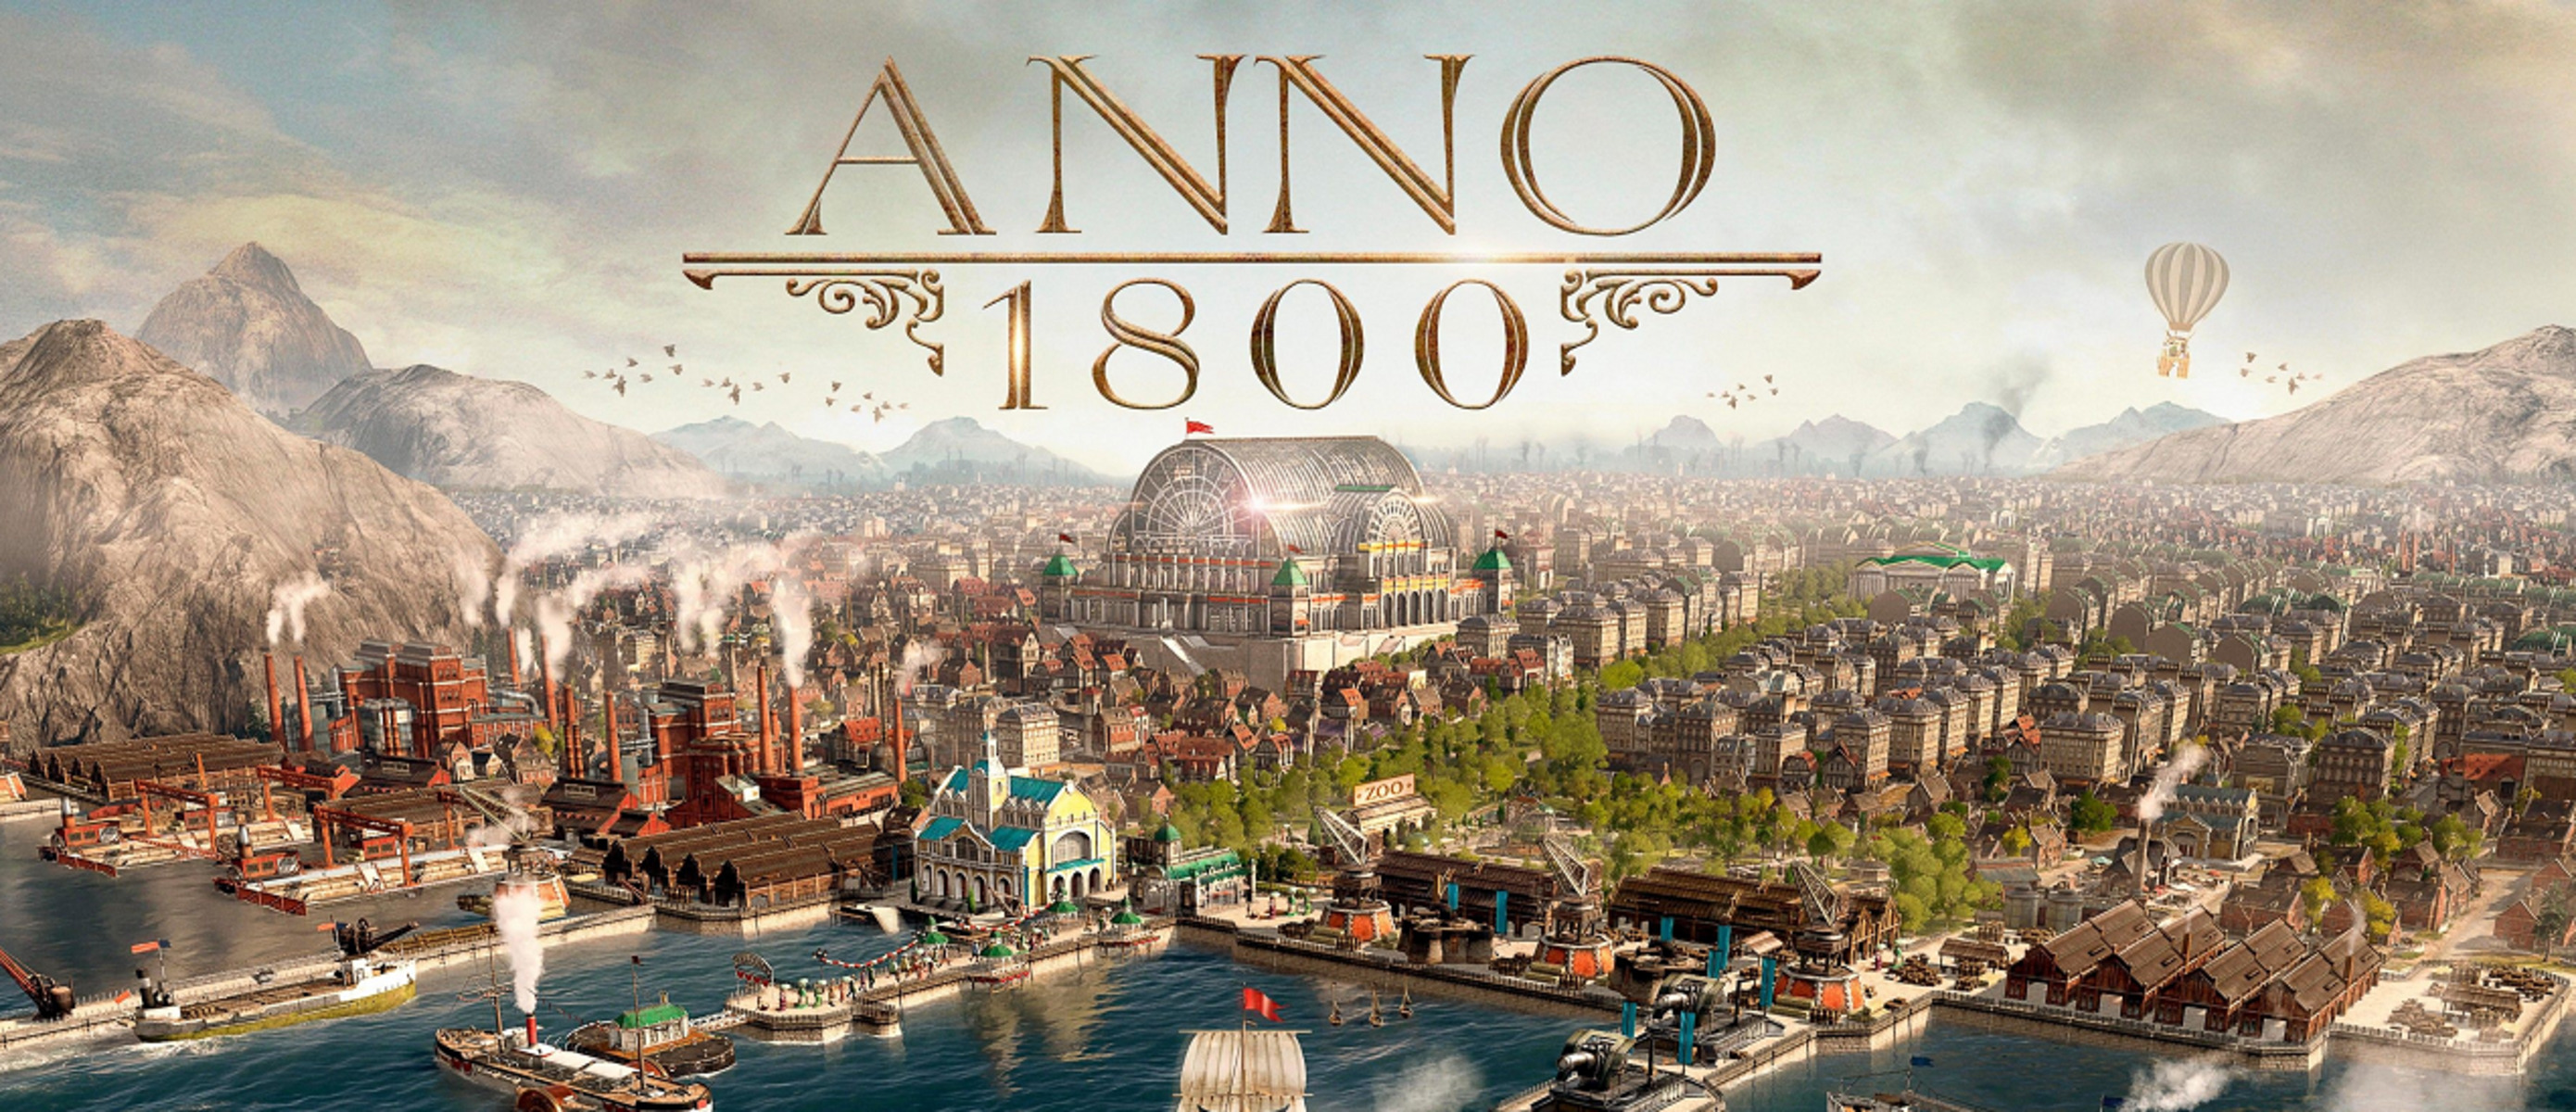 Anno 1800 для steam фото 20